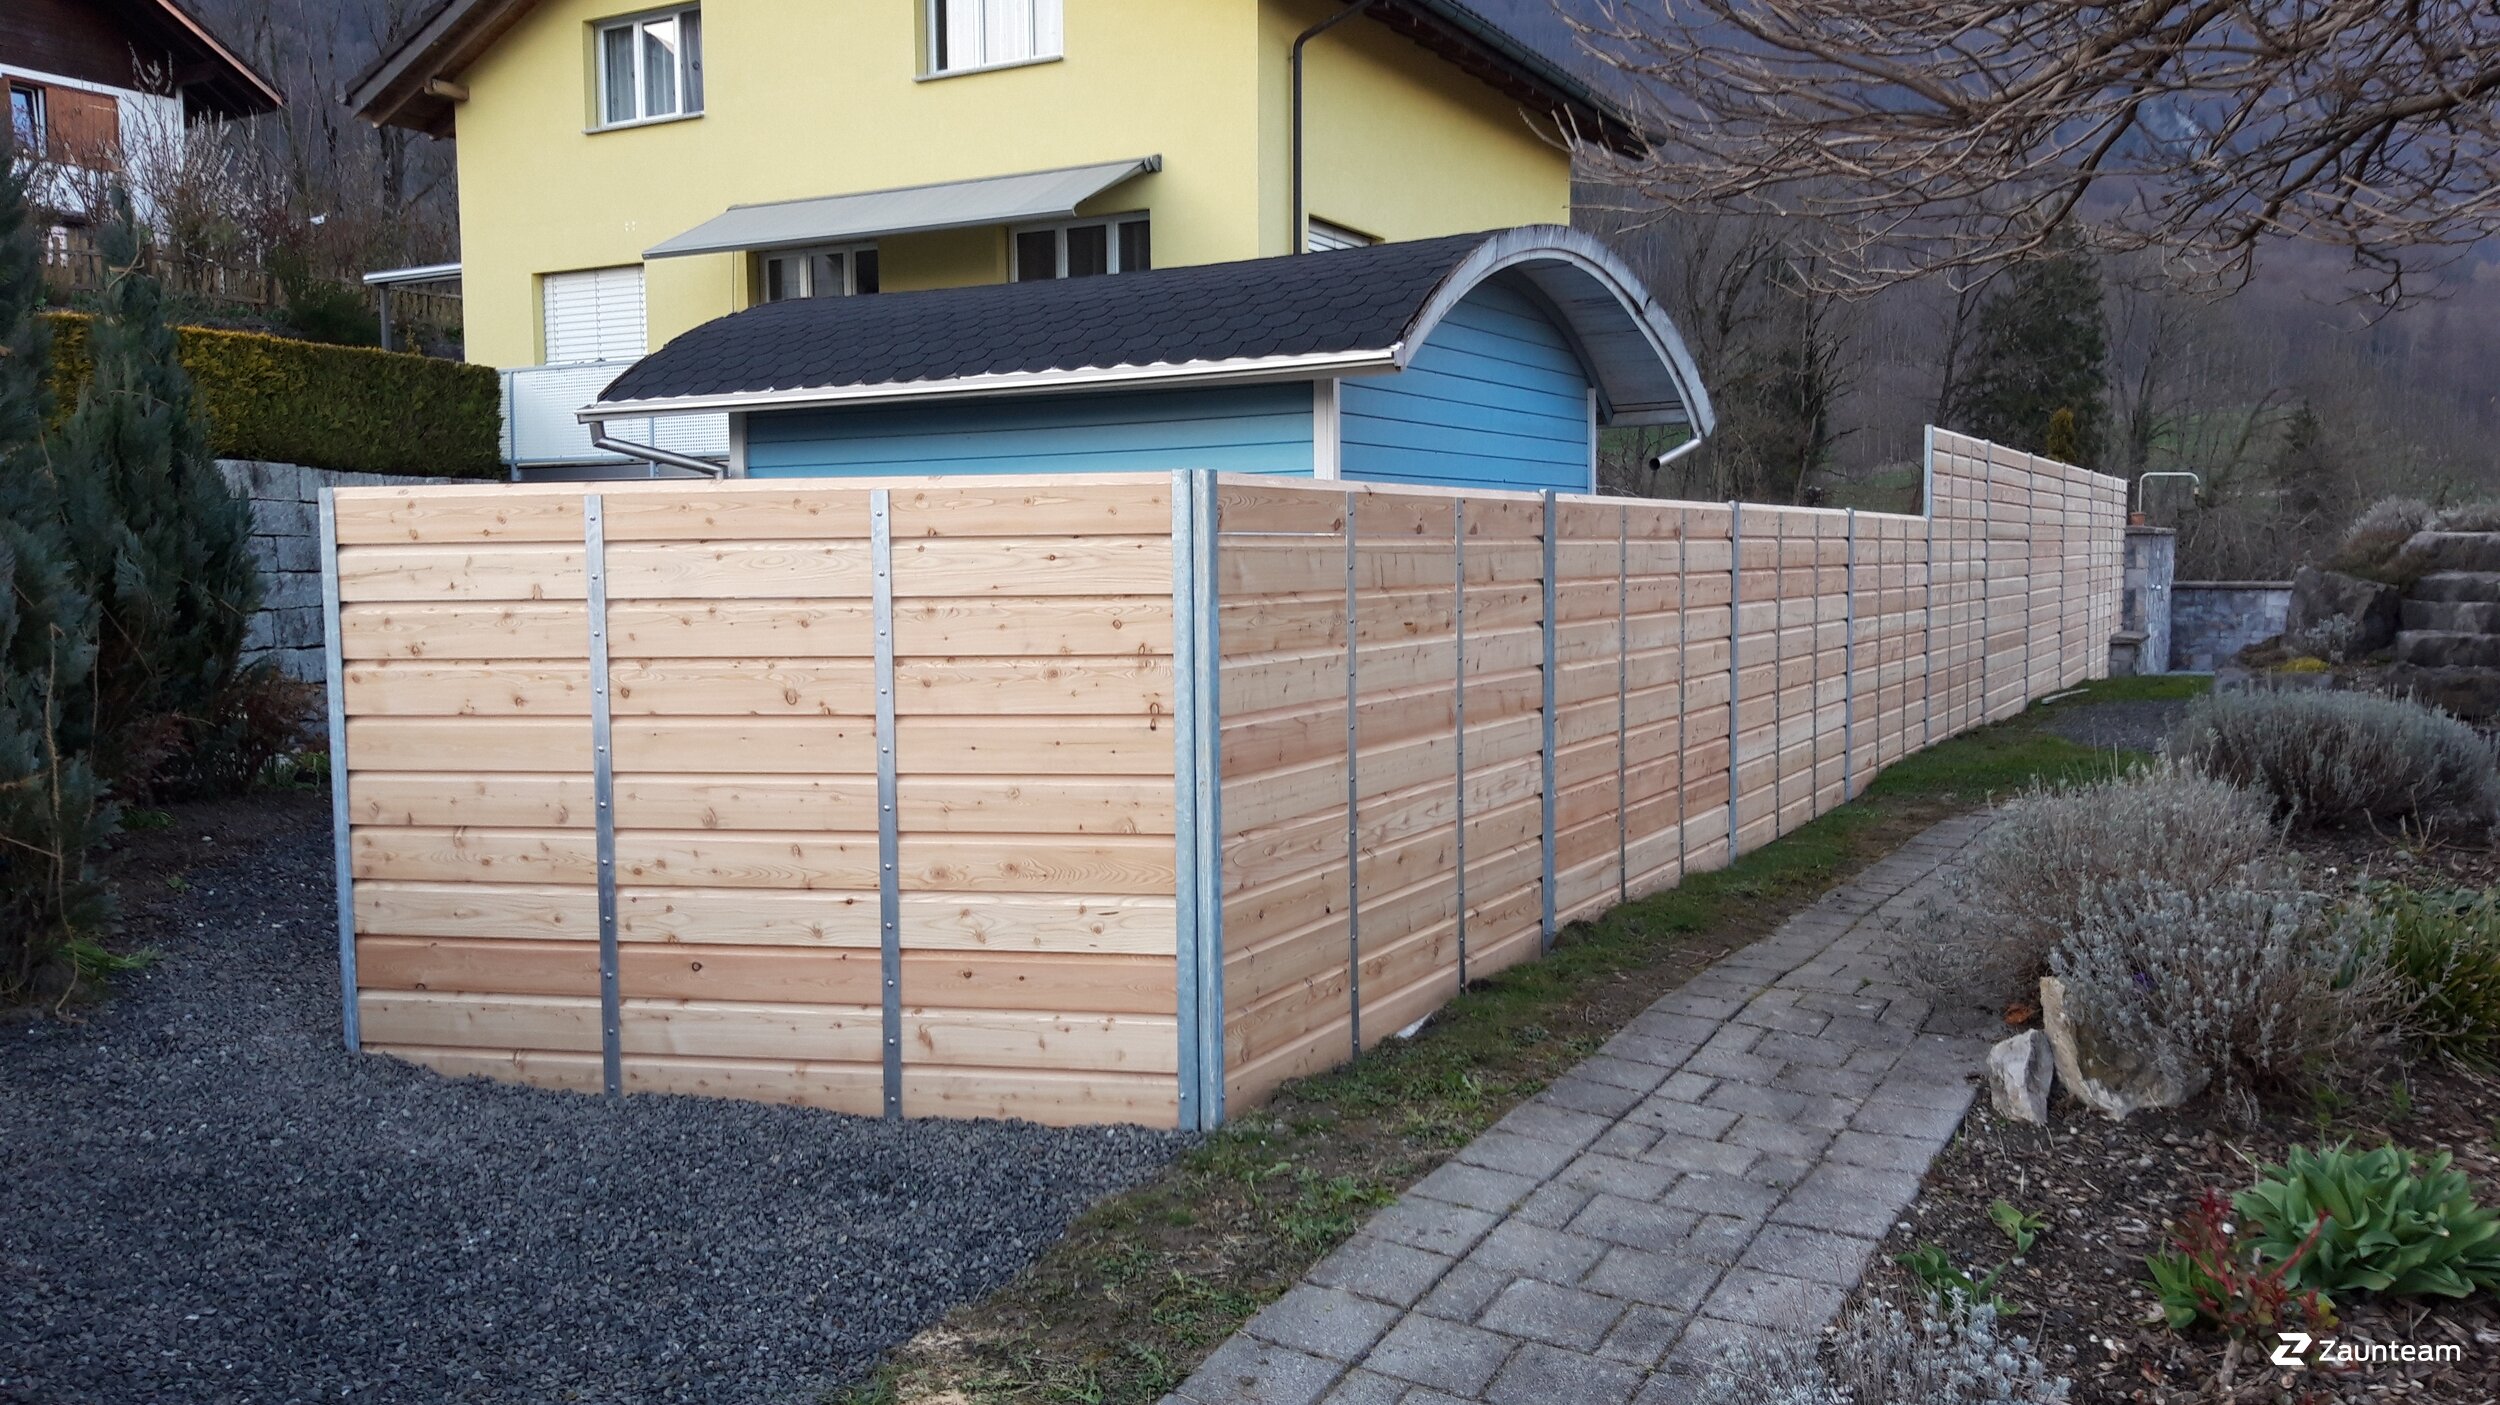 Protection brise-vue en bois de 2020 à 9467 Frümsen Suisse de Zaunteam Werdenberg.